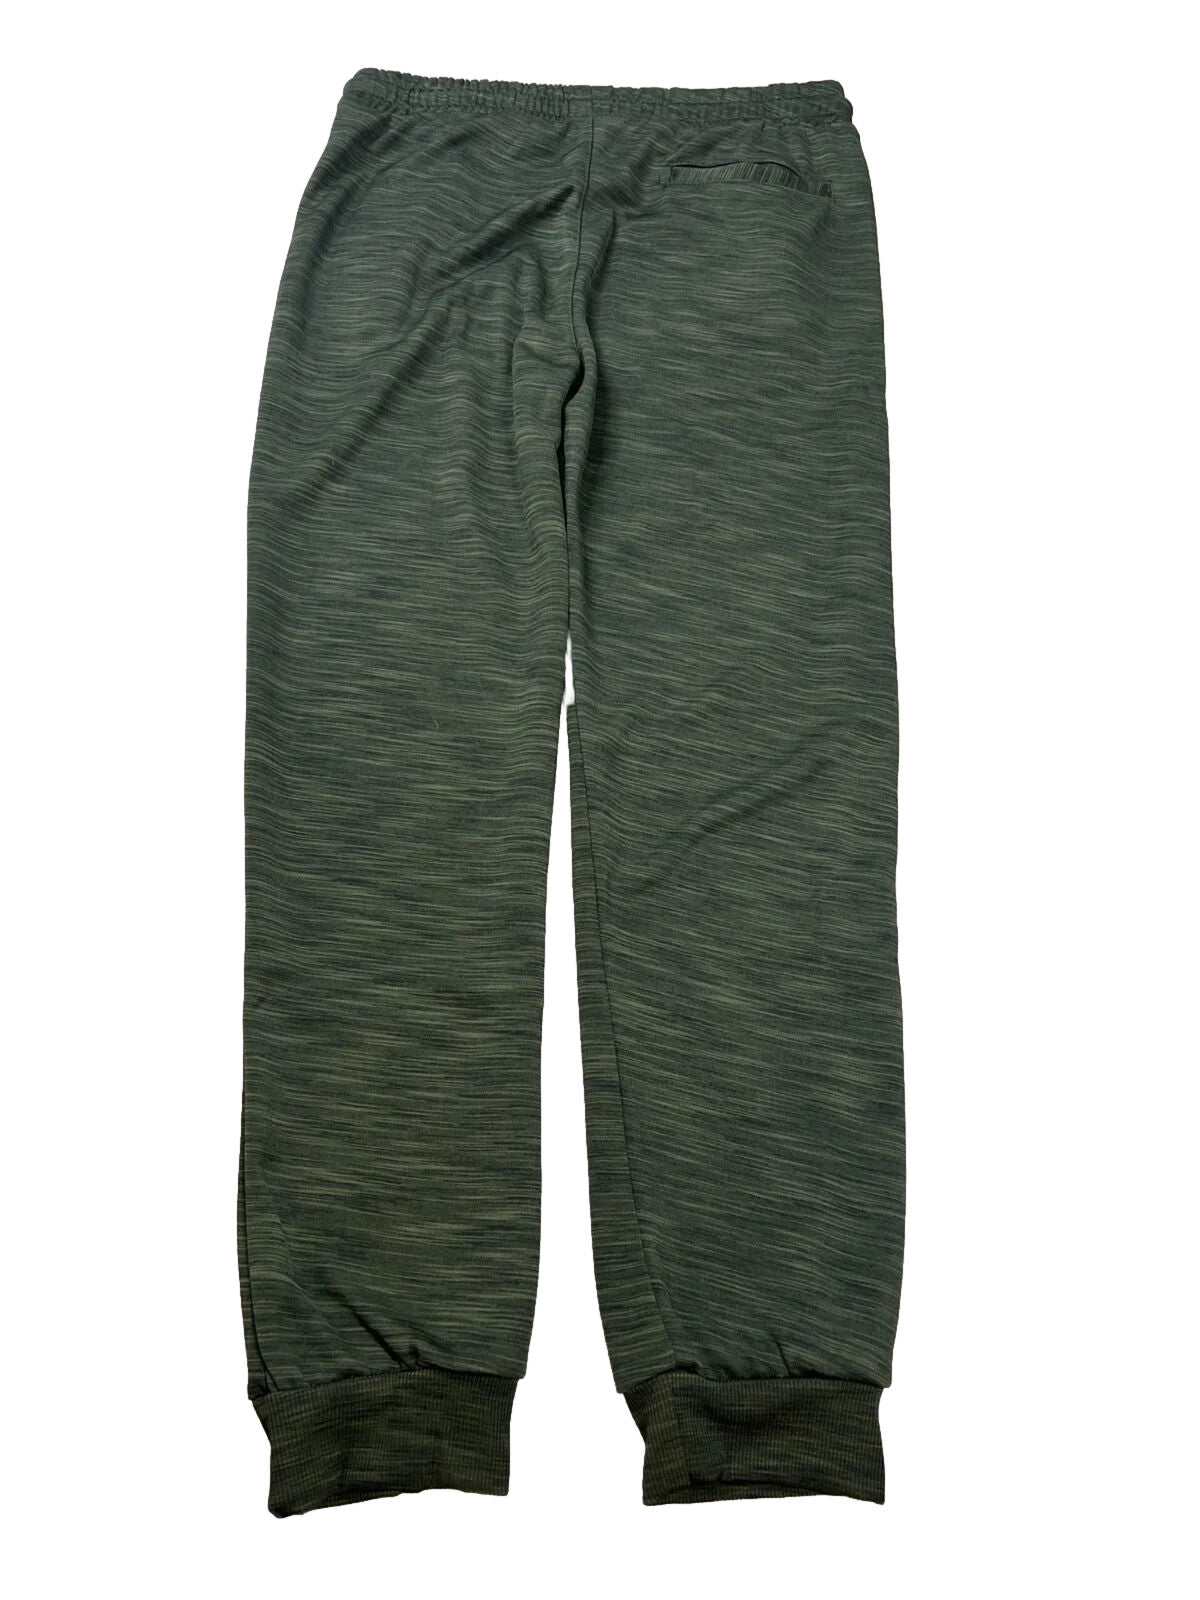 NUEVO Pantalones deportivos estilo jogger con efecto espacial y efecto fresco en verde para niños de Ring of Fire - XL